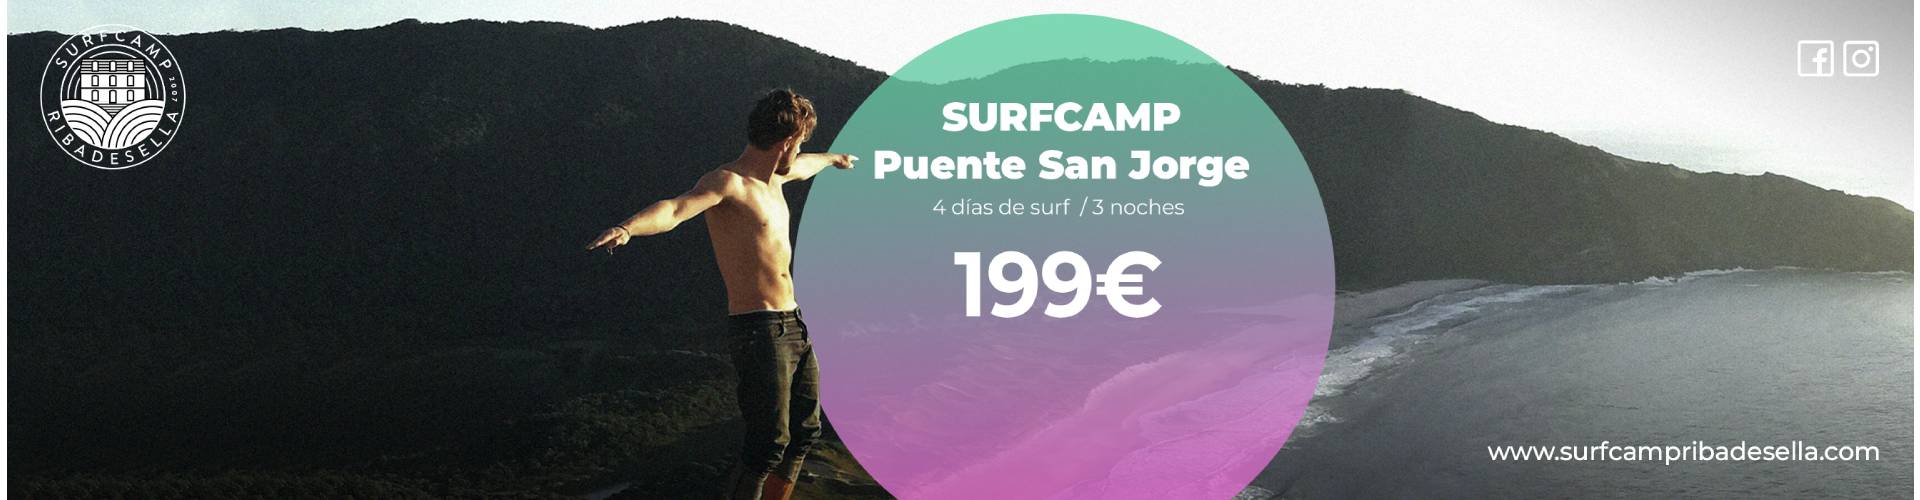 Oferta Surfcamp Puente San Jose